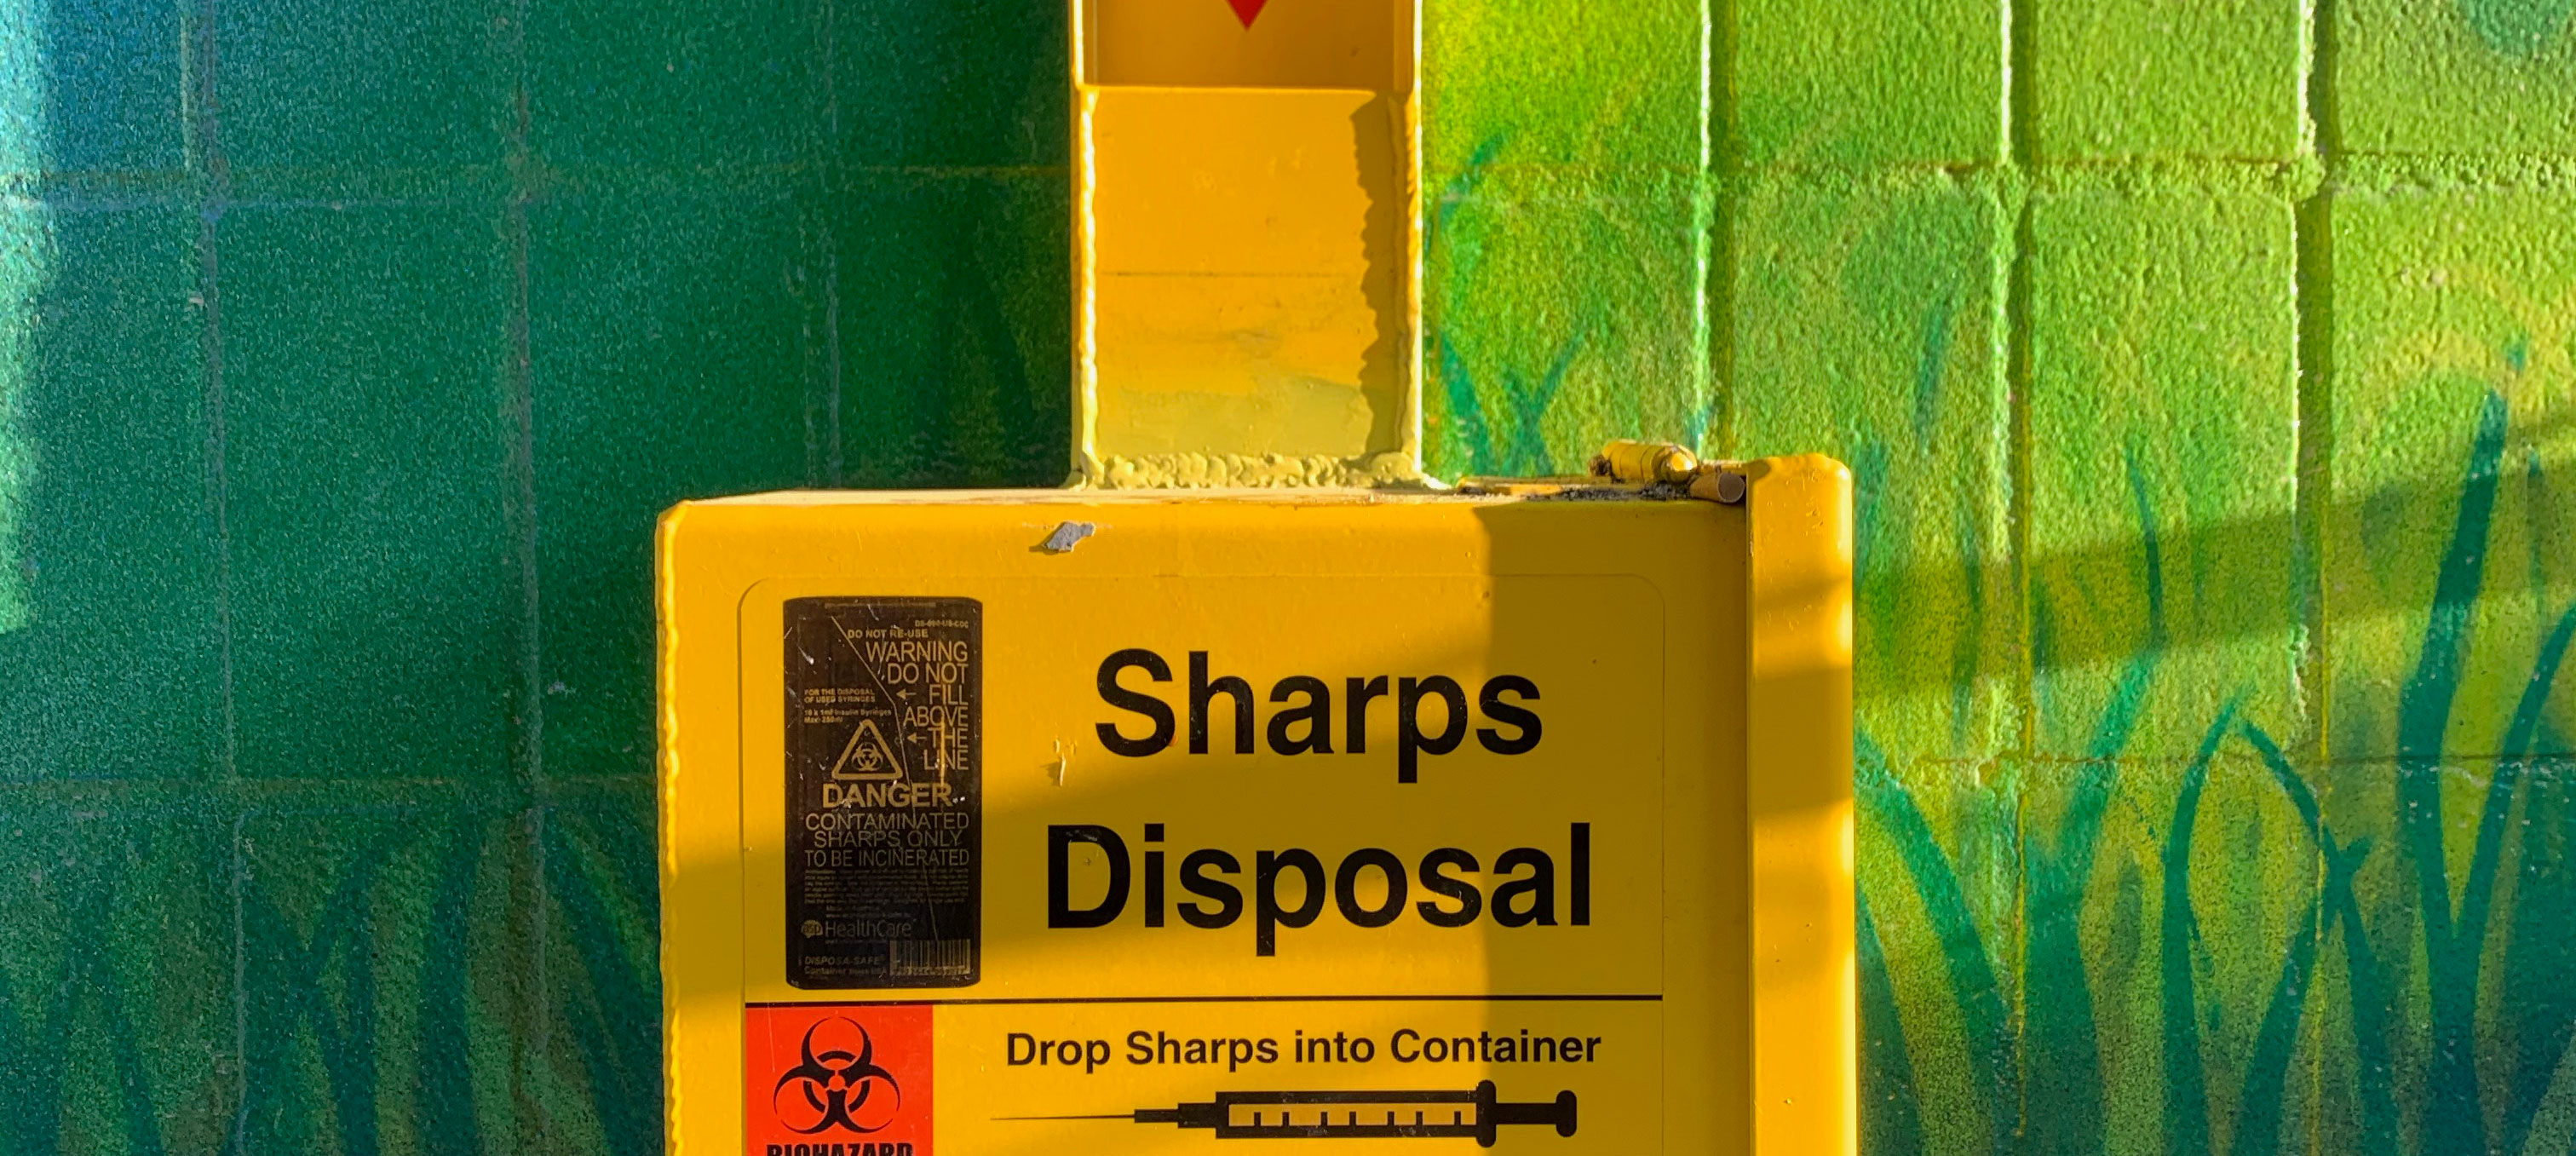 sharps disposal bin